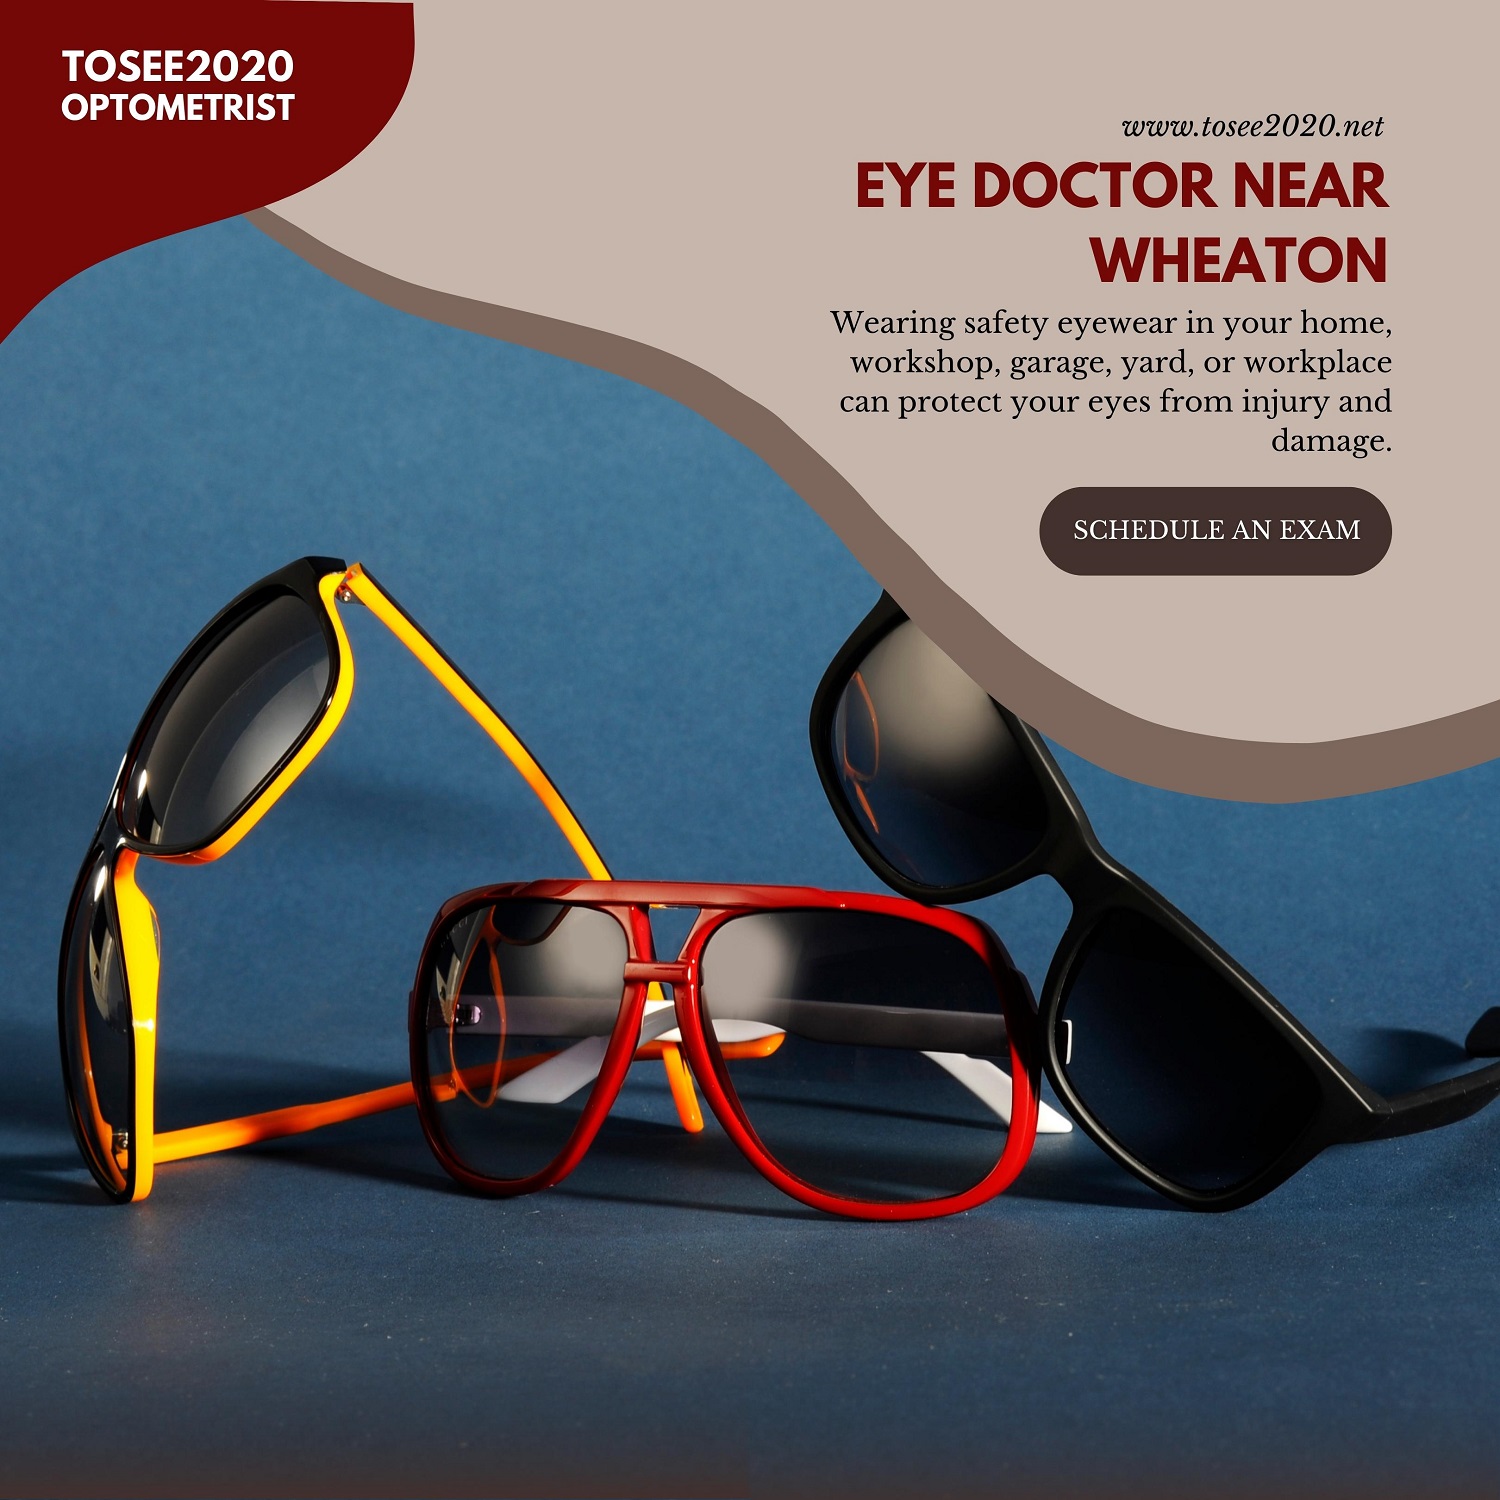 Eye Doctor Near Wheaton